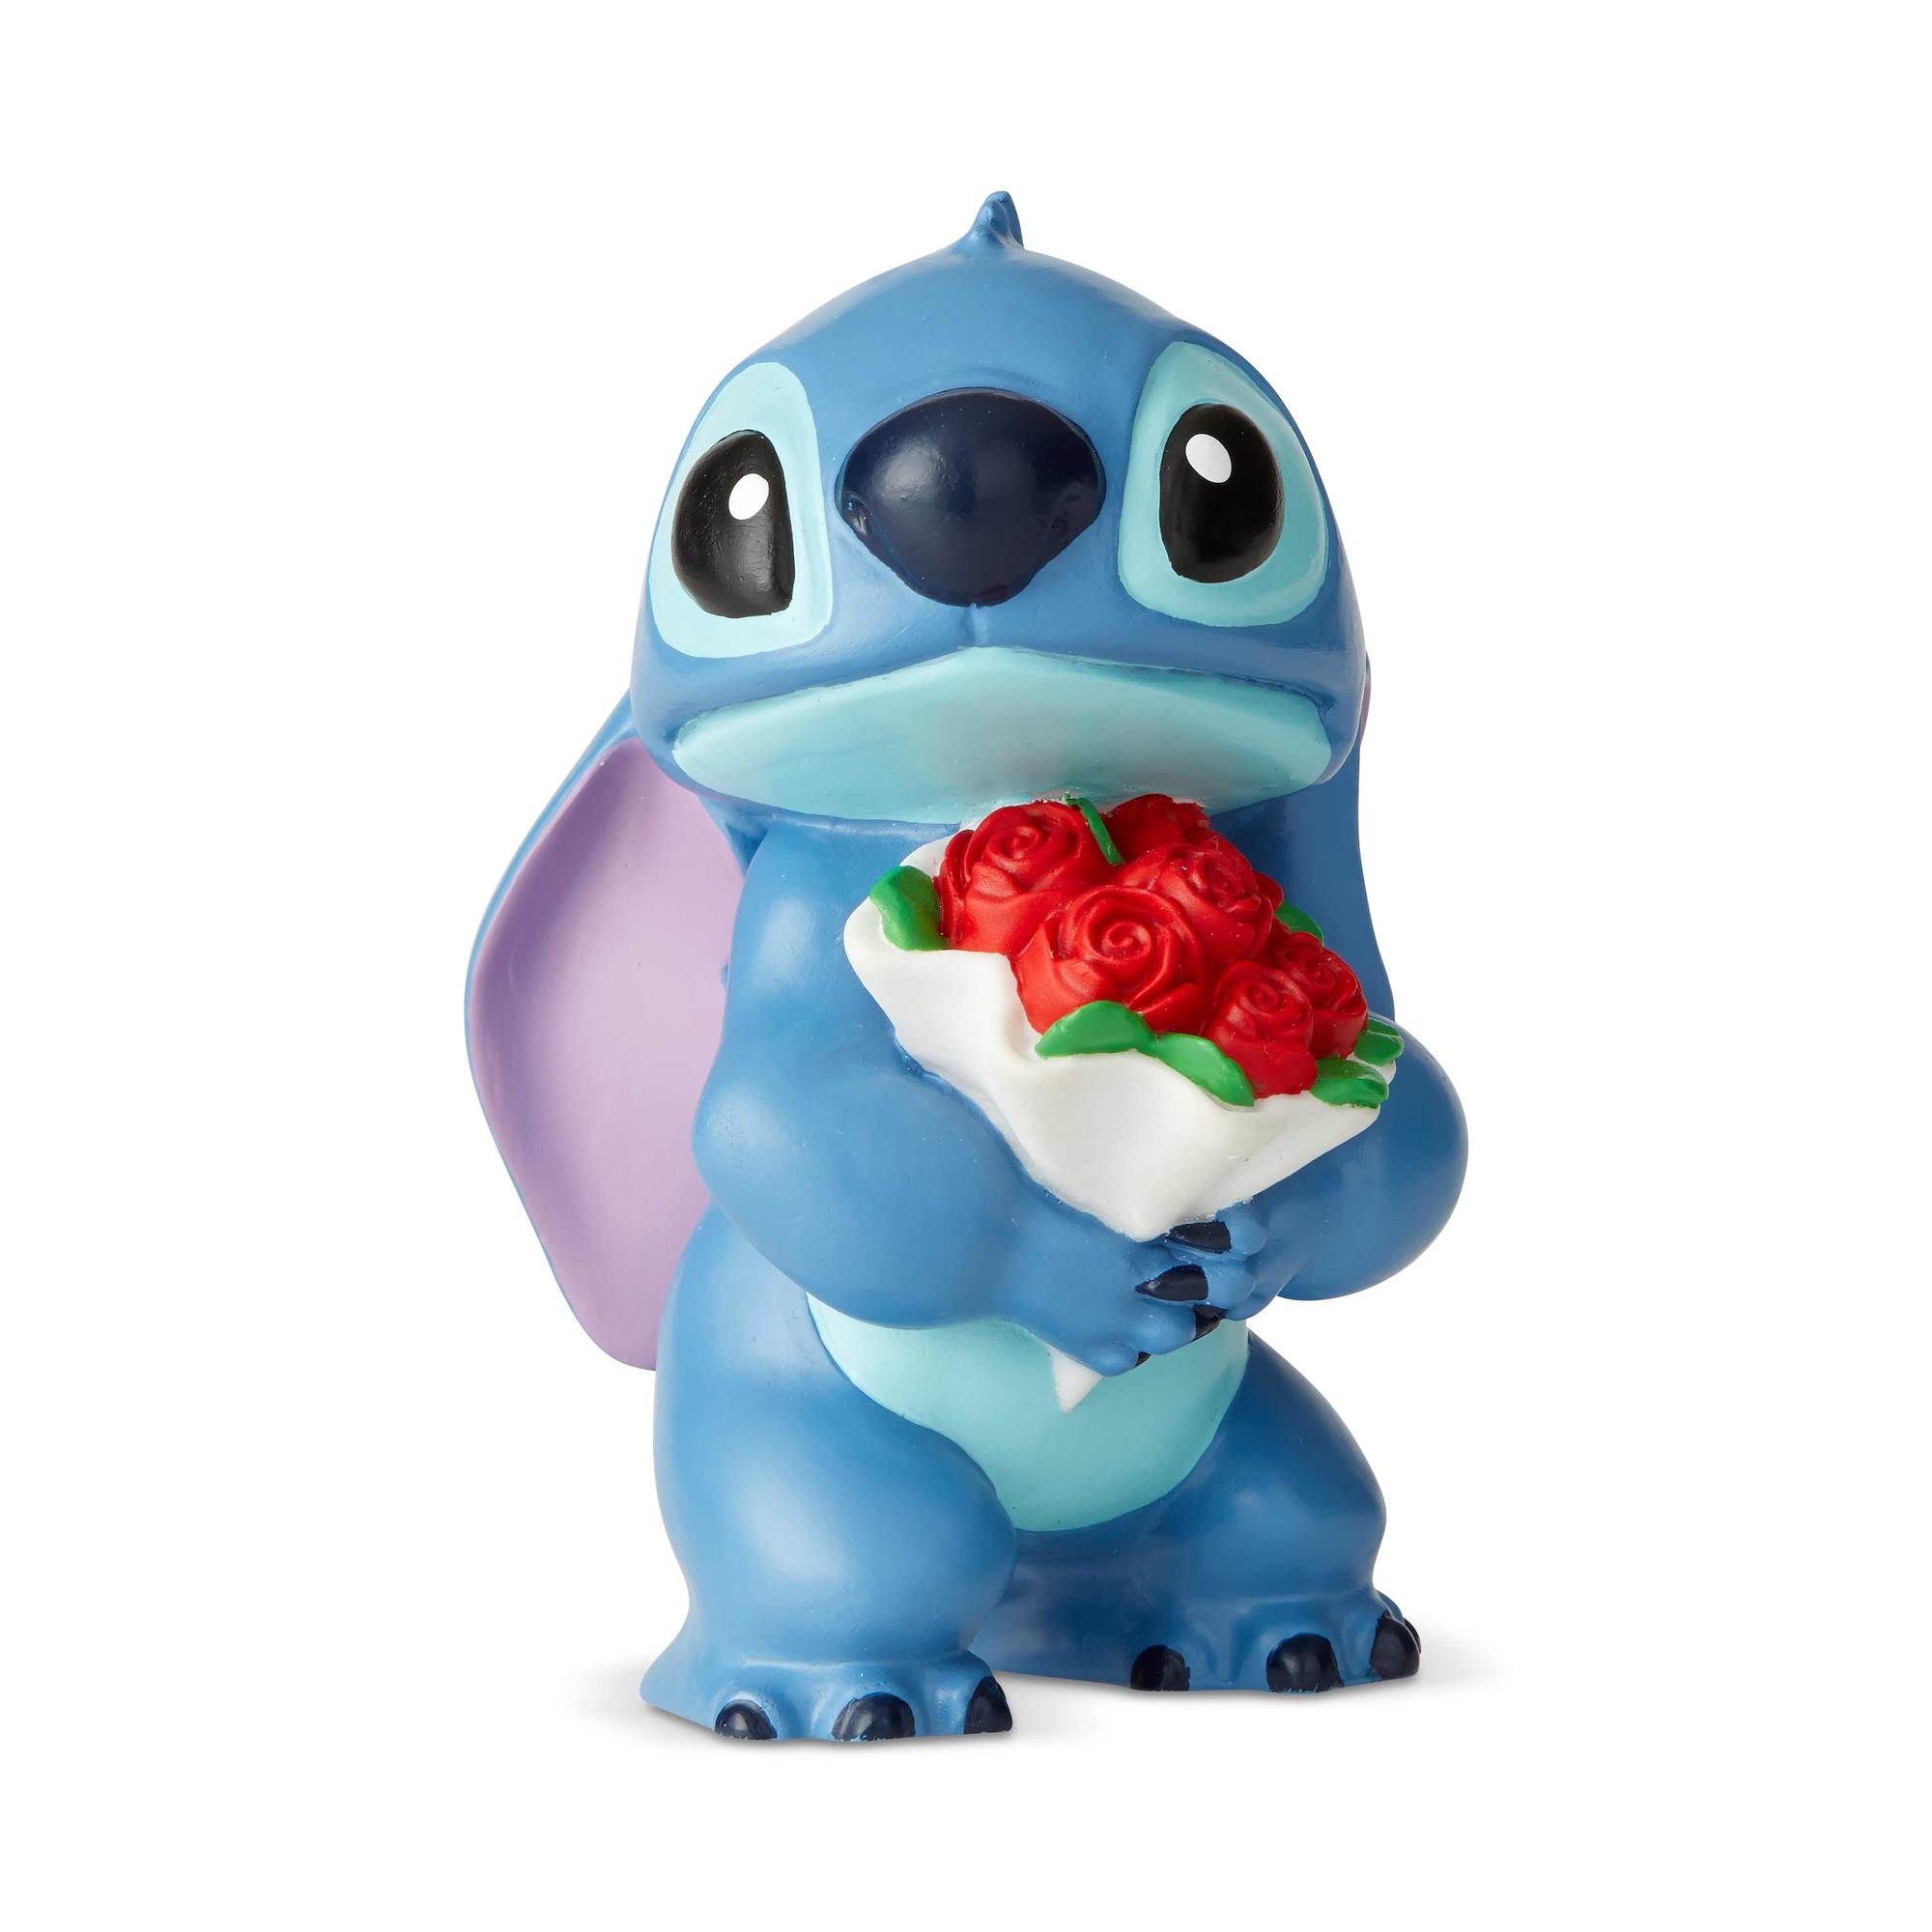 Disney Showcase Lilo & Stitch with Flowers Figure